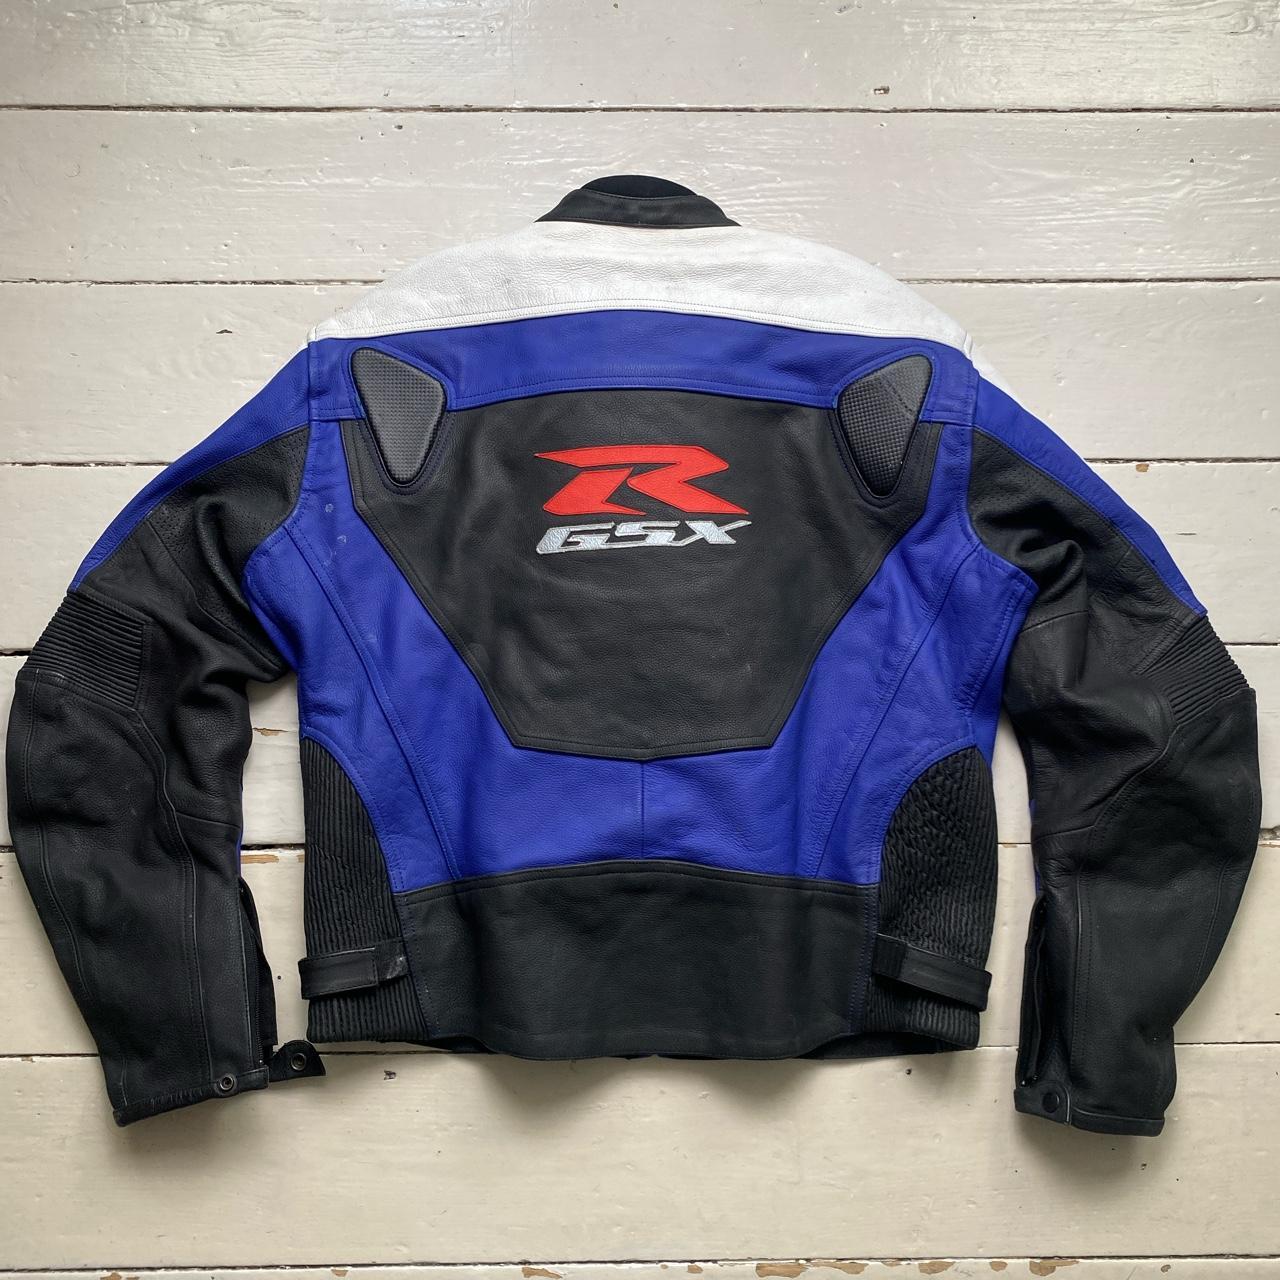 Suzuki R GSX Blue White Black and Red Leather Motorcycle Biker Jacket